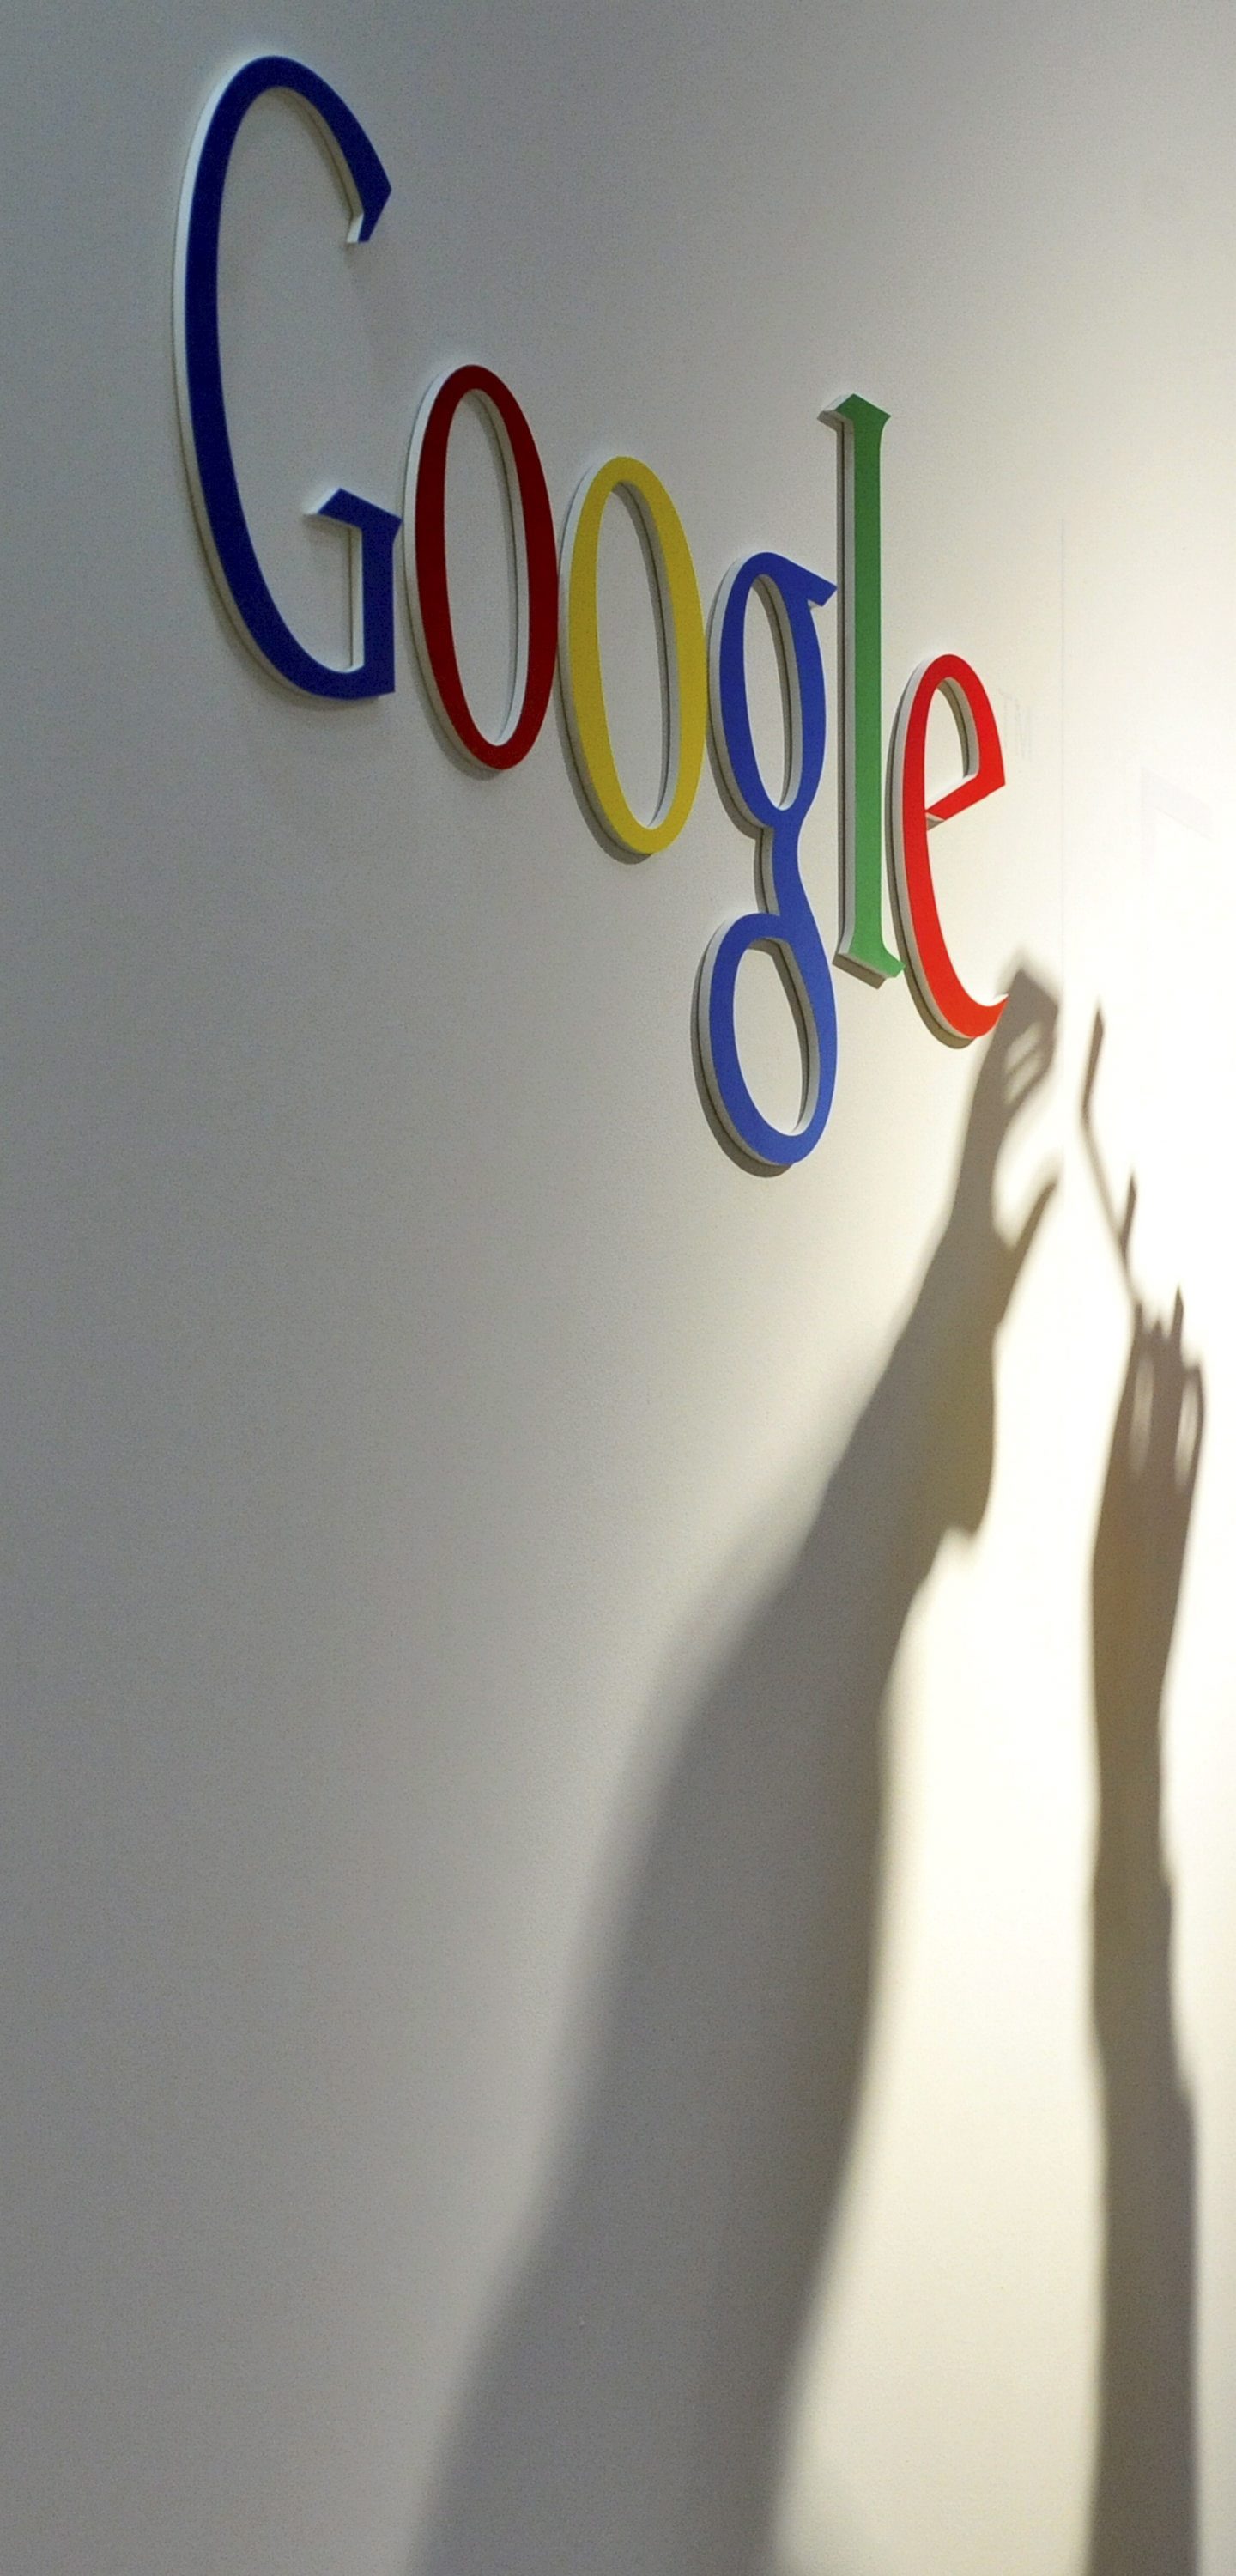 Google е похарчил $17 млрд. за придобивания през последните 2 години